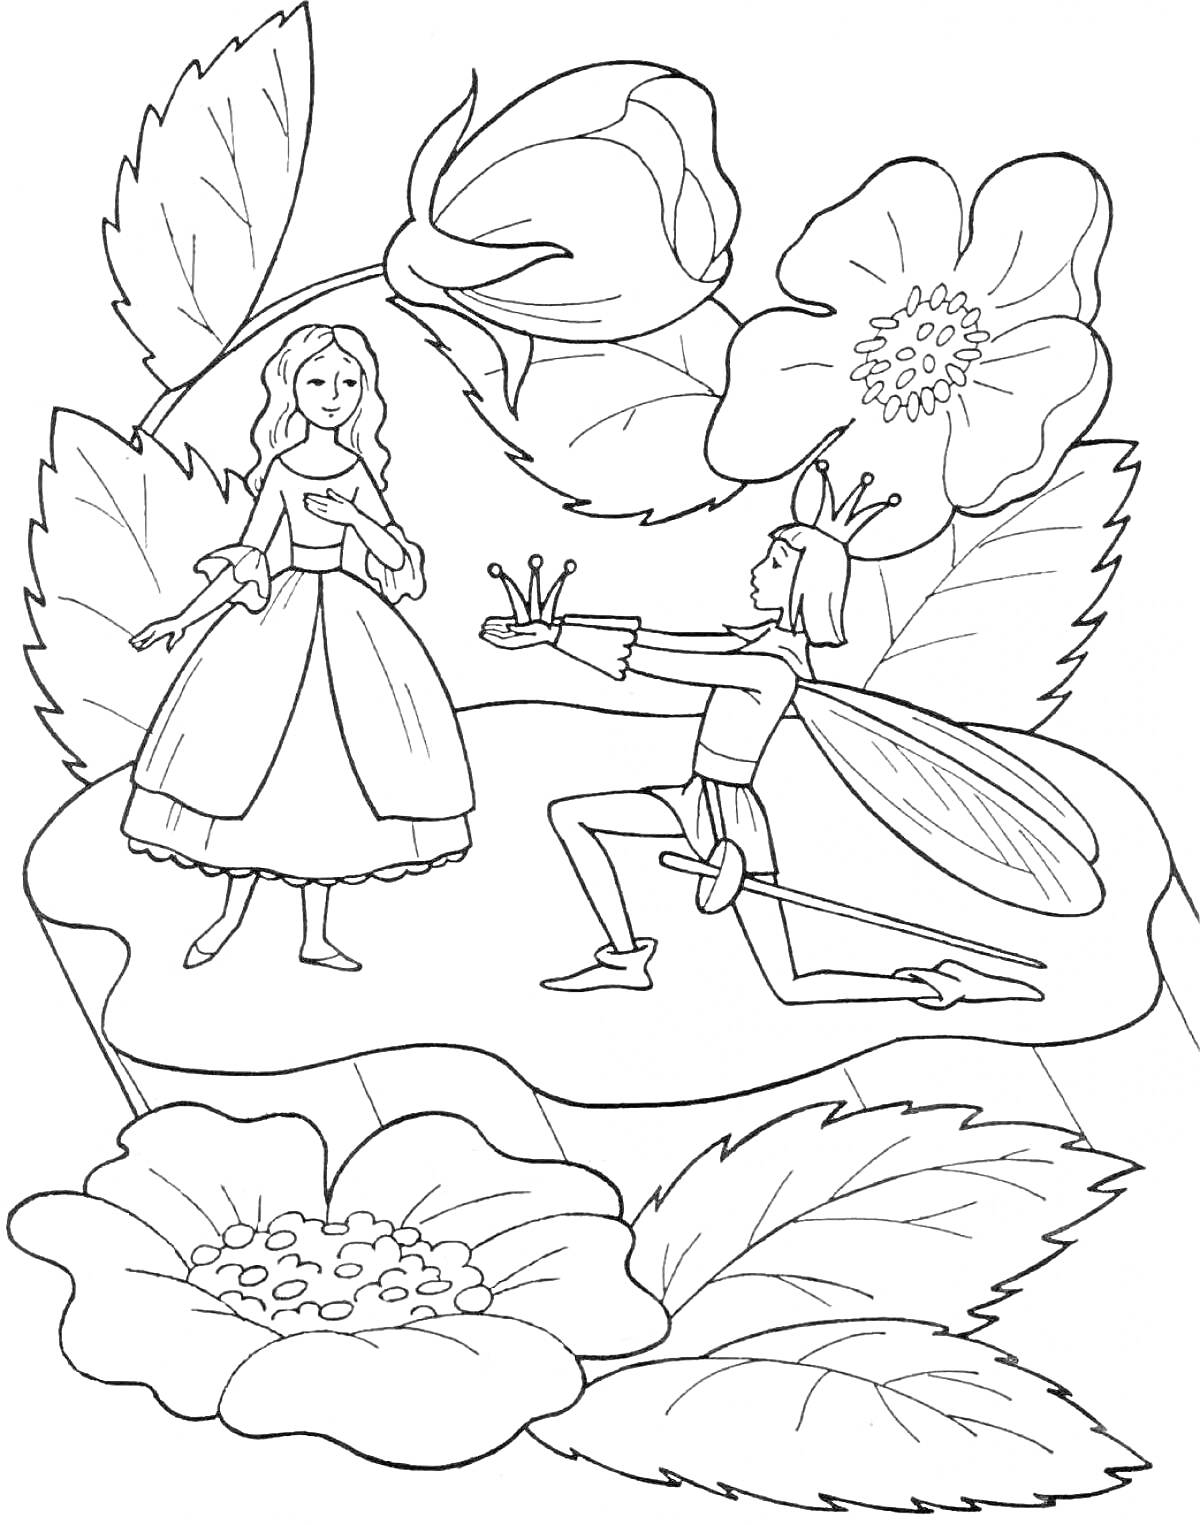 Раскраска Дюймовочка и принц во время предложения руки и сердца на цветочном фоне